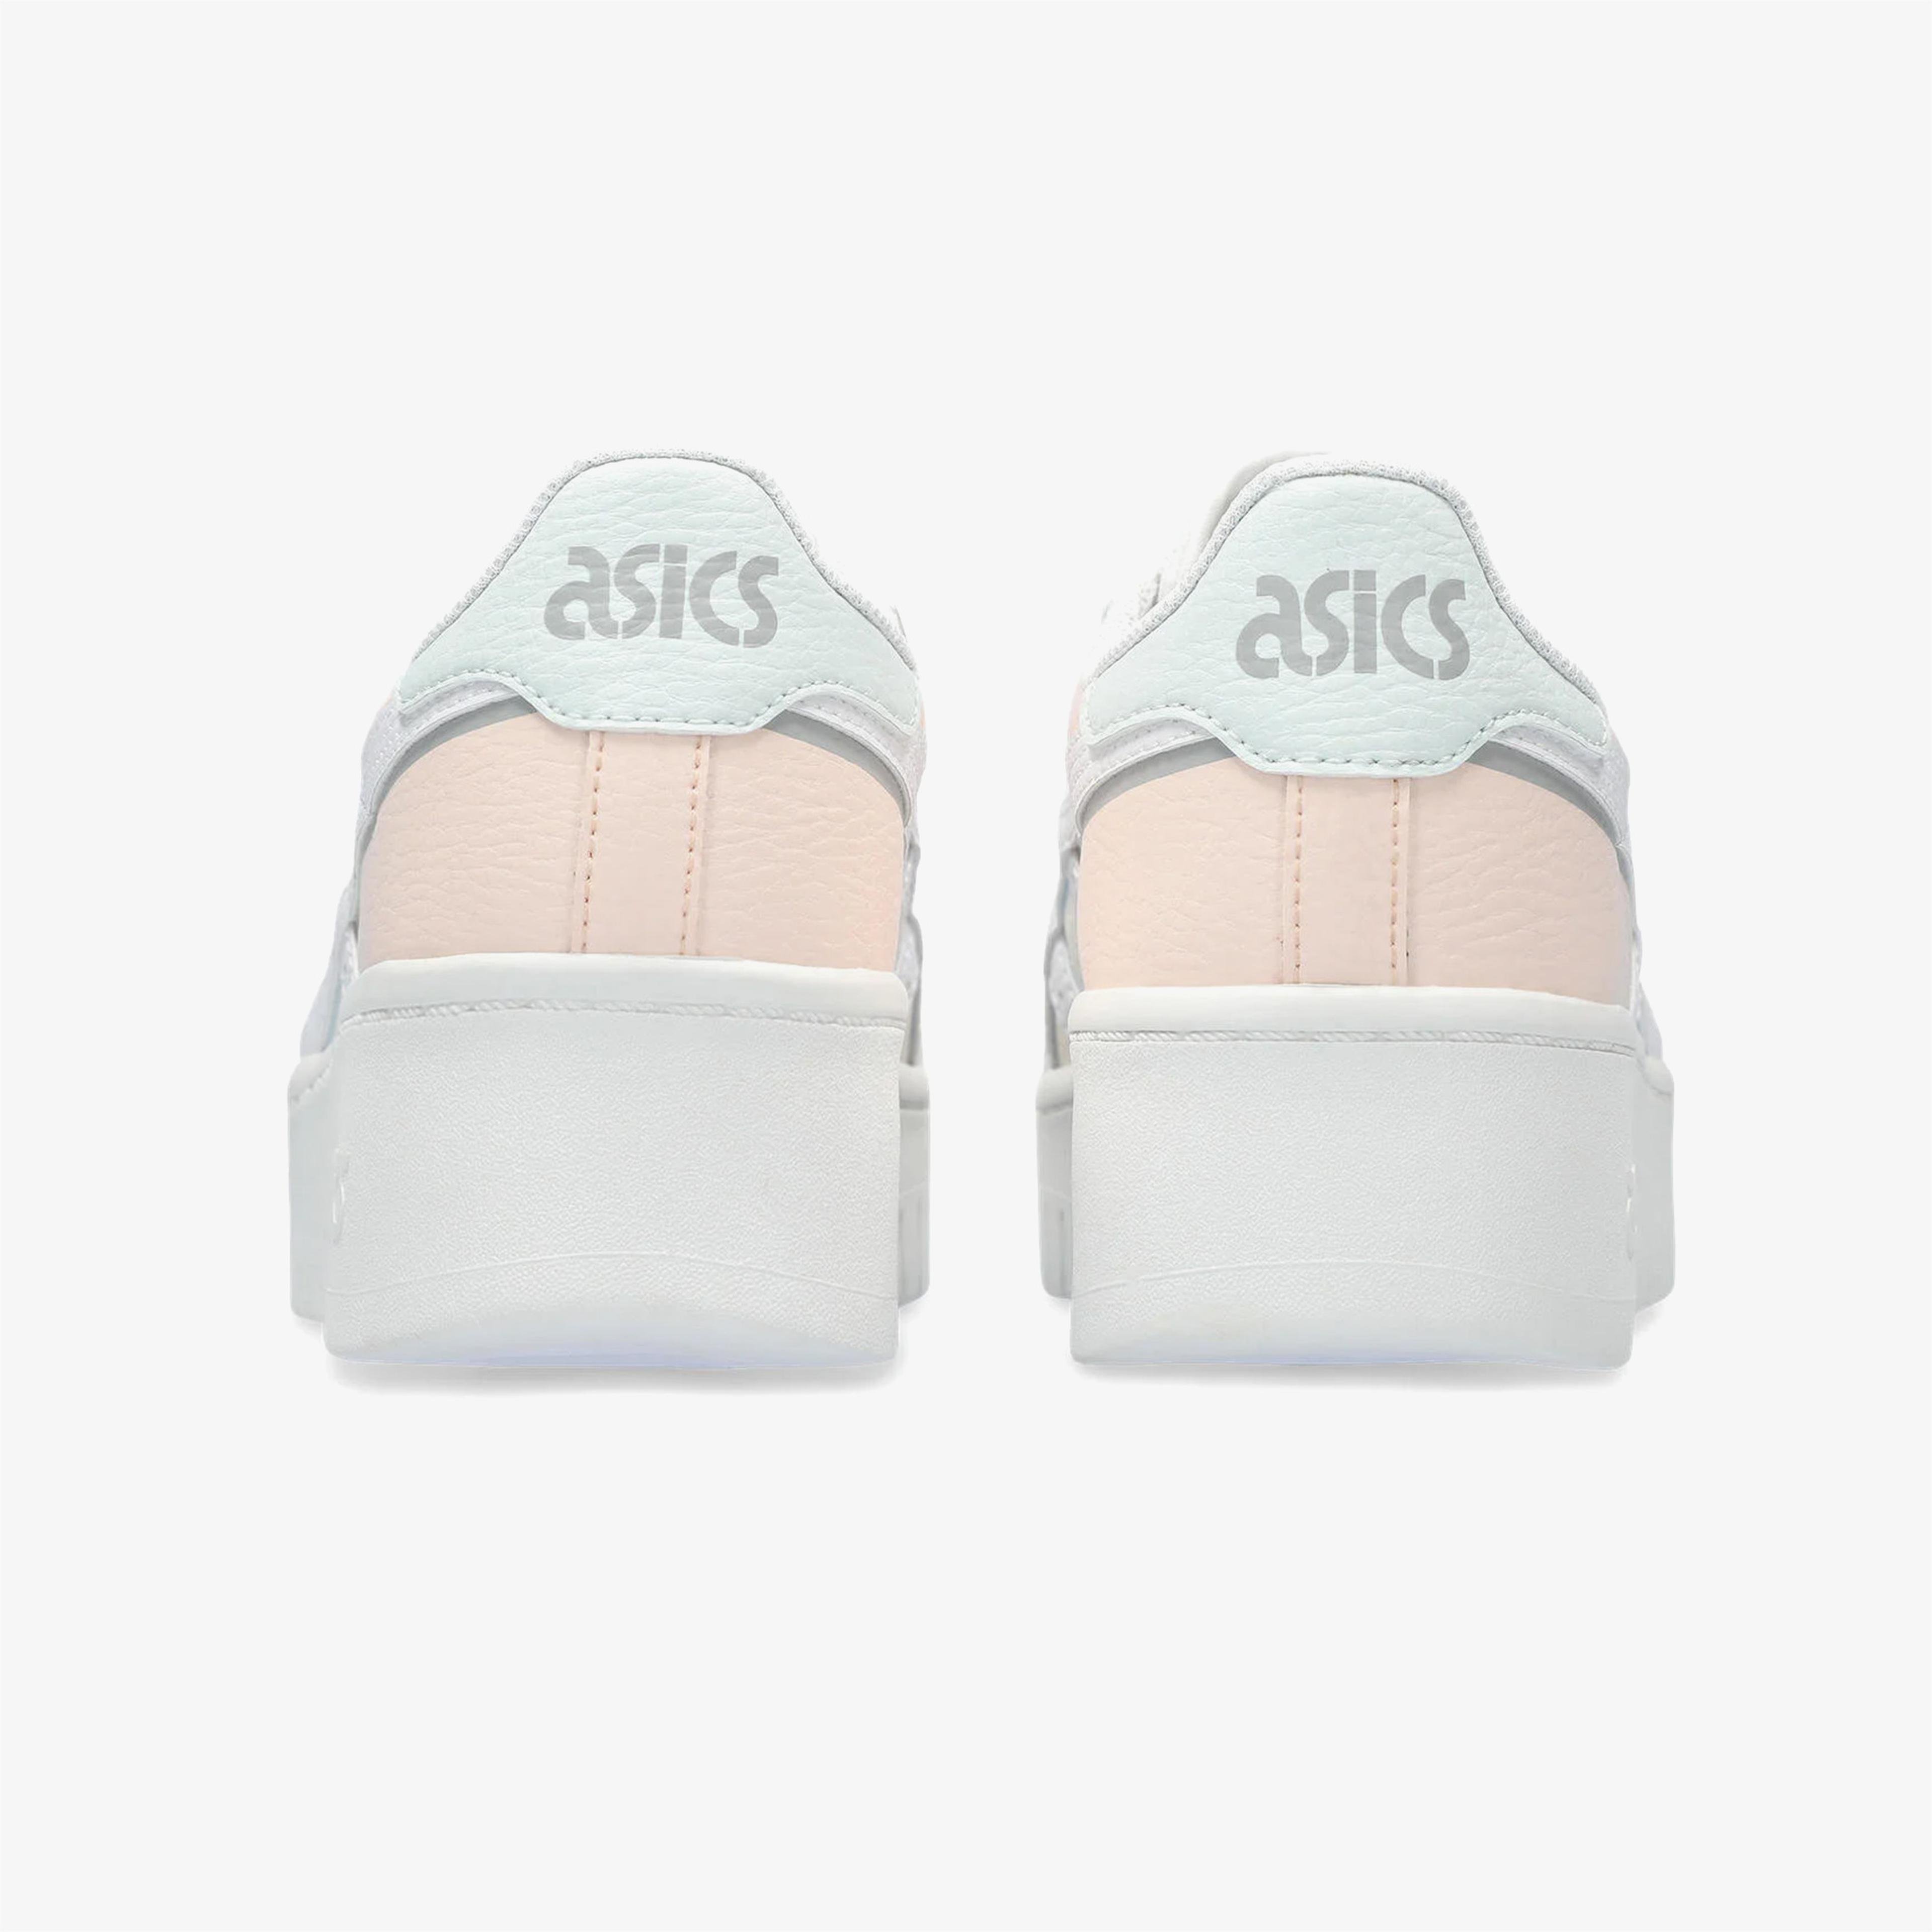 Asics Japan S Pf Kadın Beyaz/Pembe Spor Ayakkabı